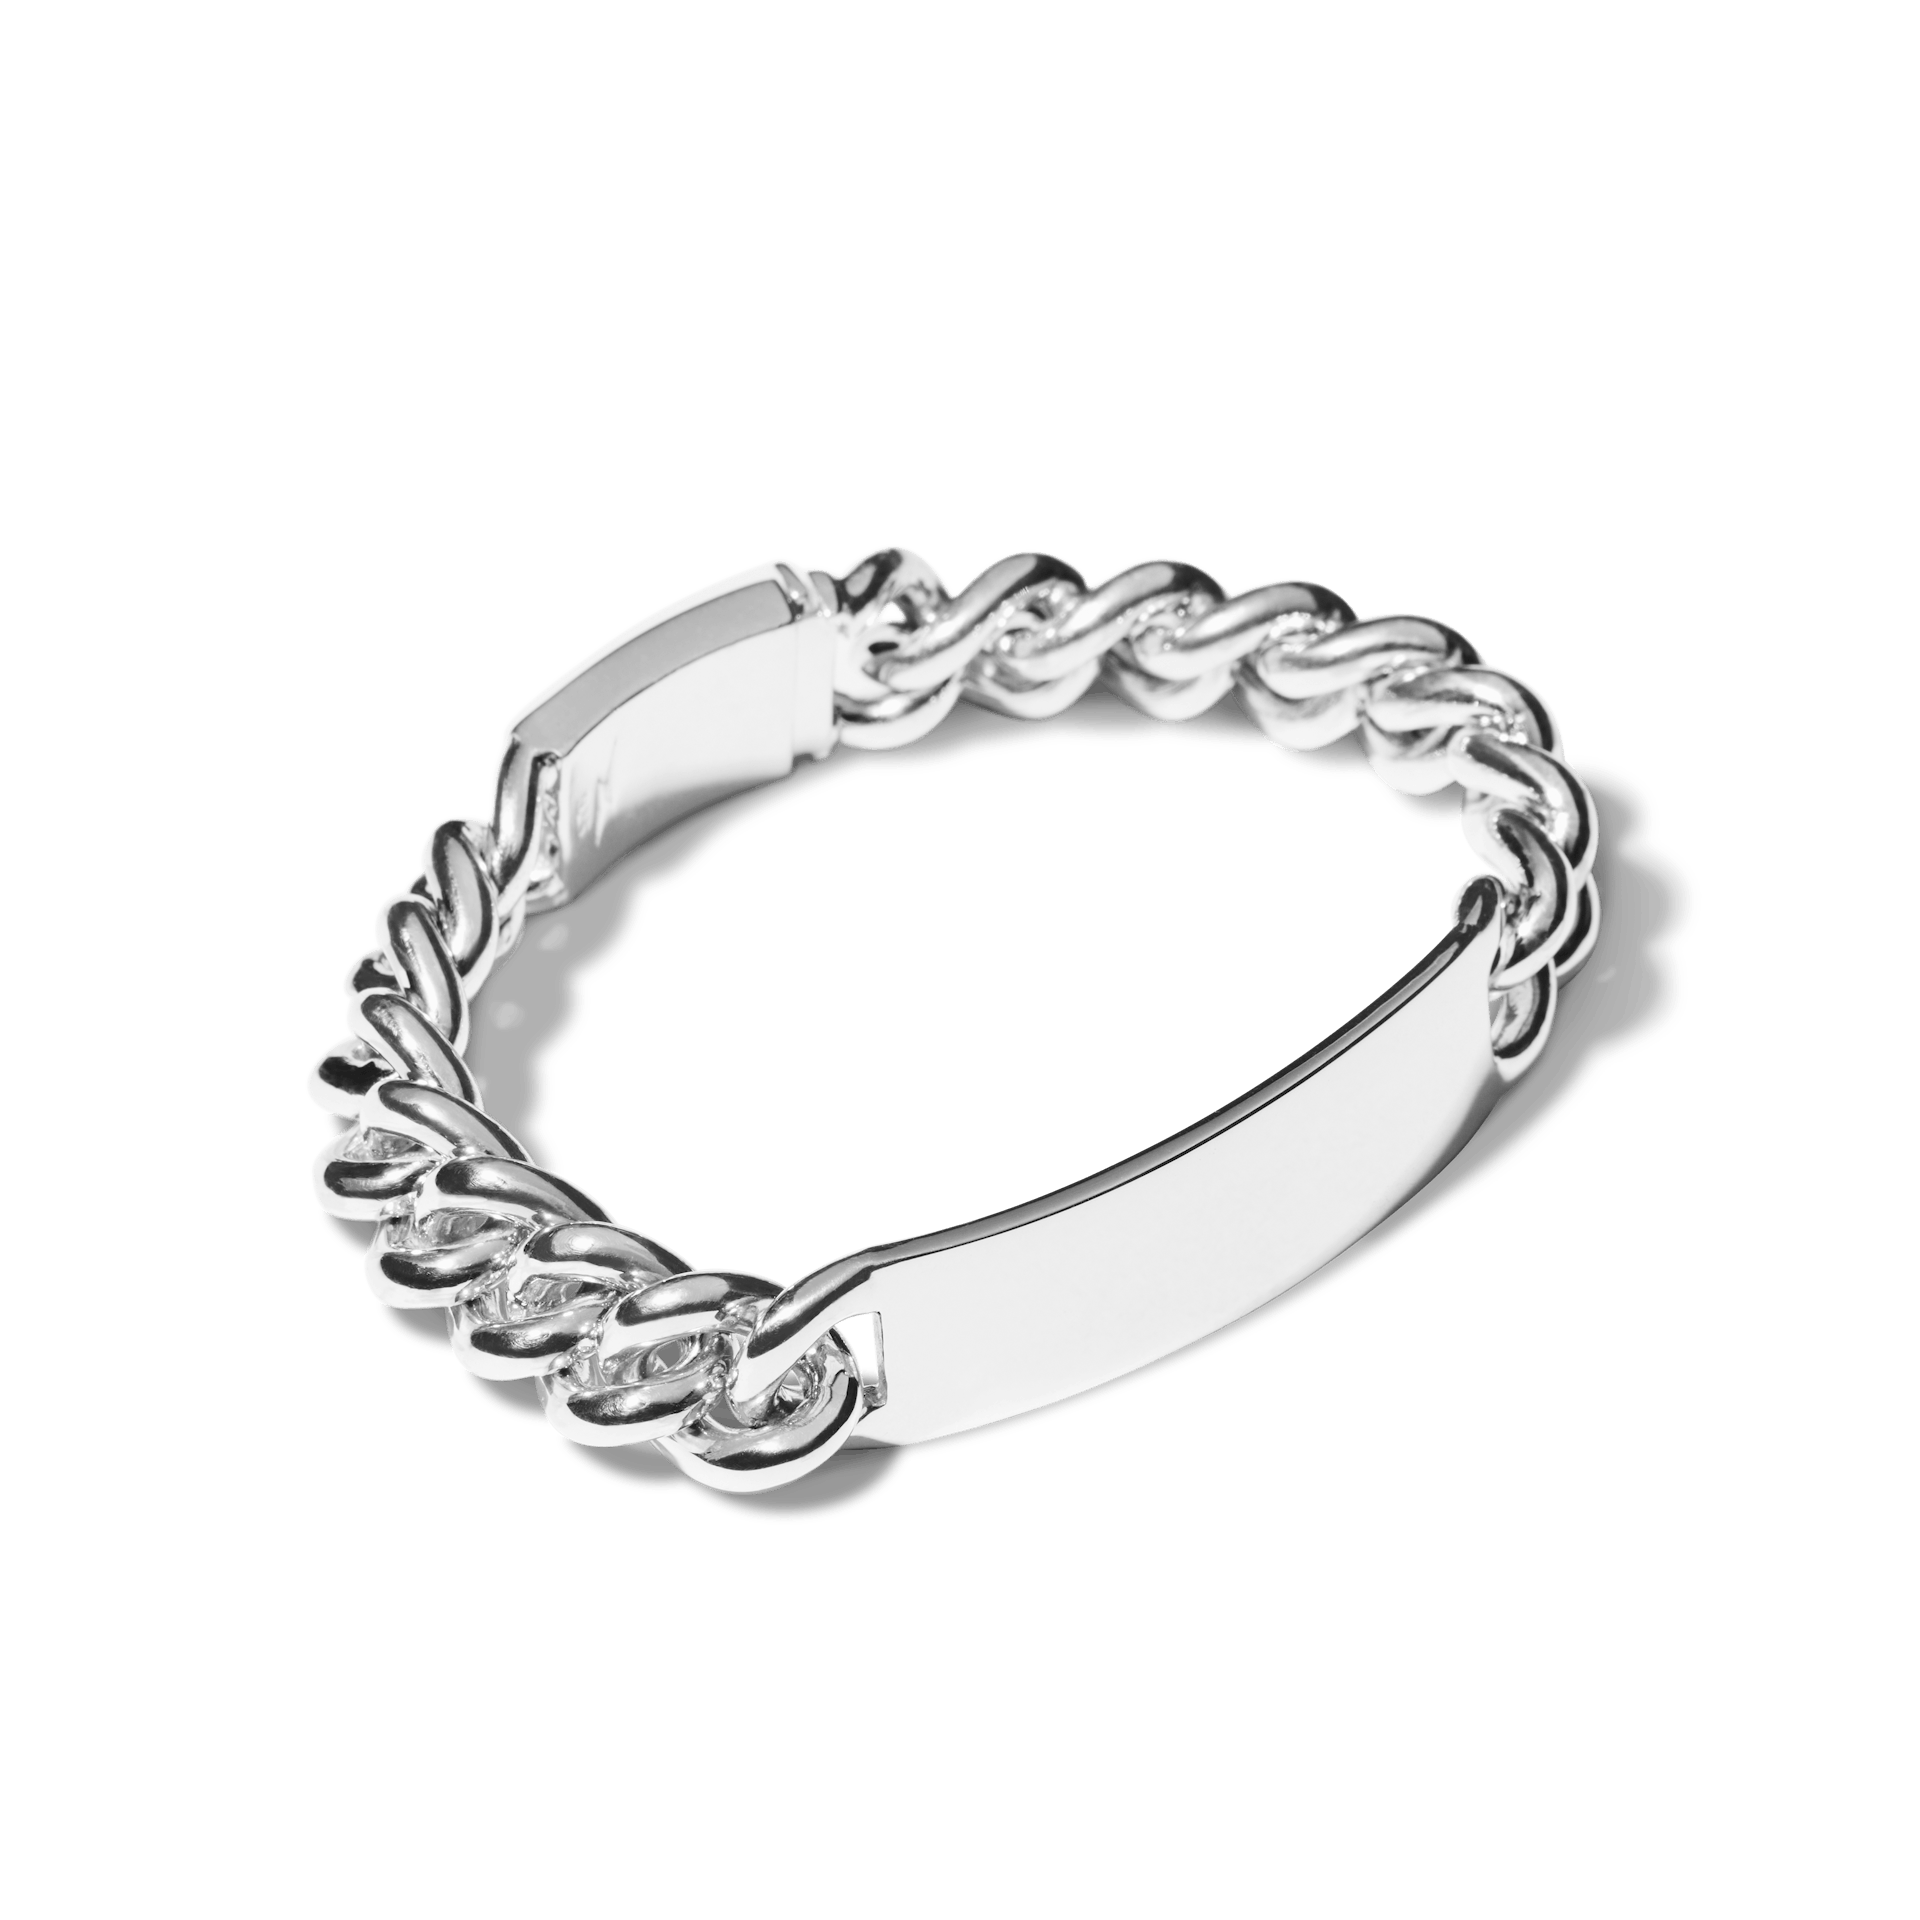 I.D. bracelet in sterling silver. | Tiffany & Co.